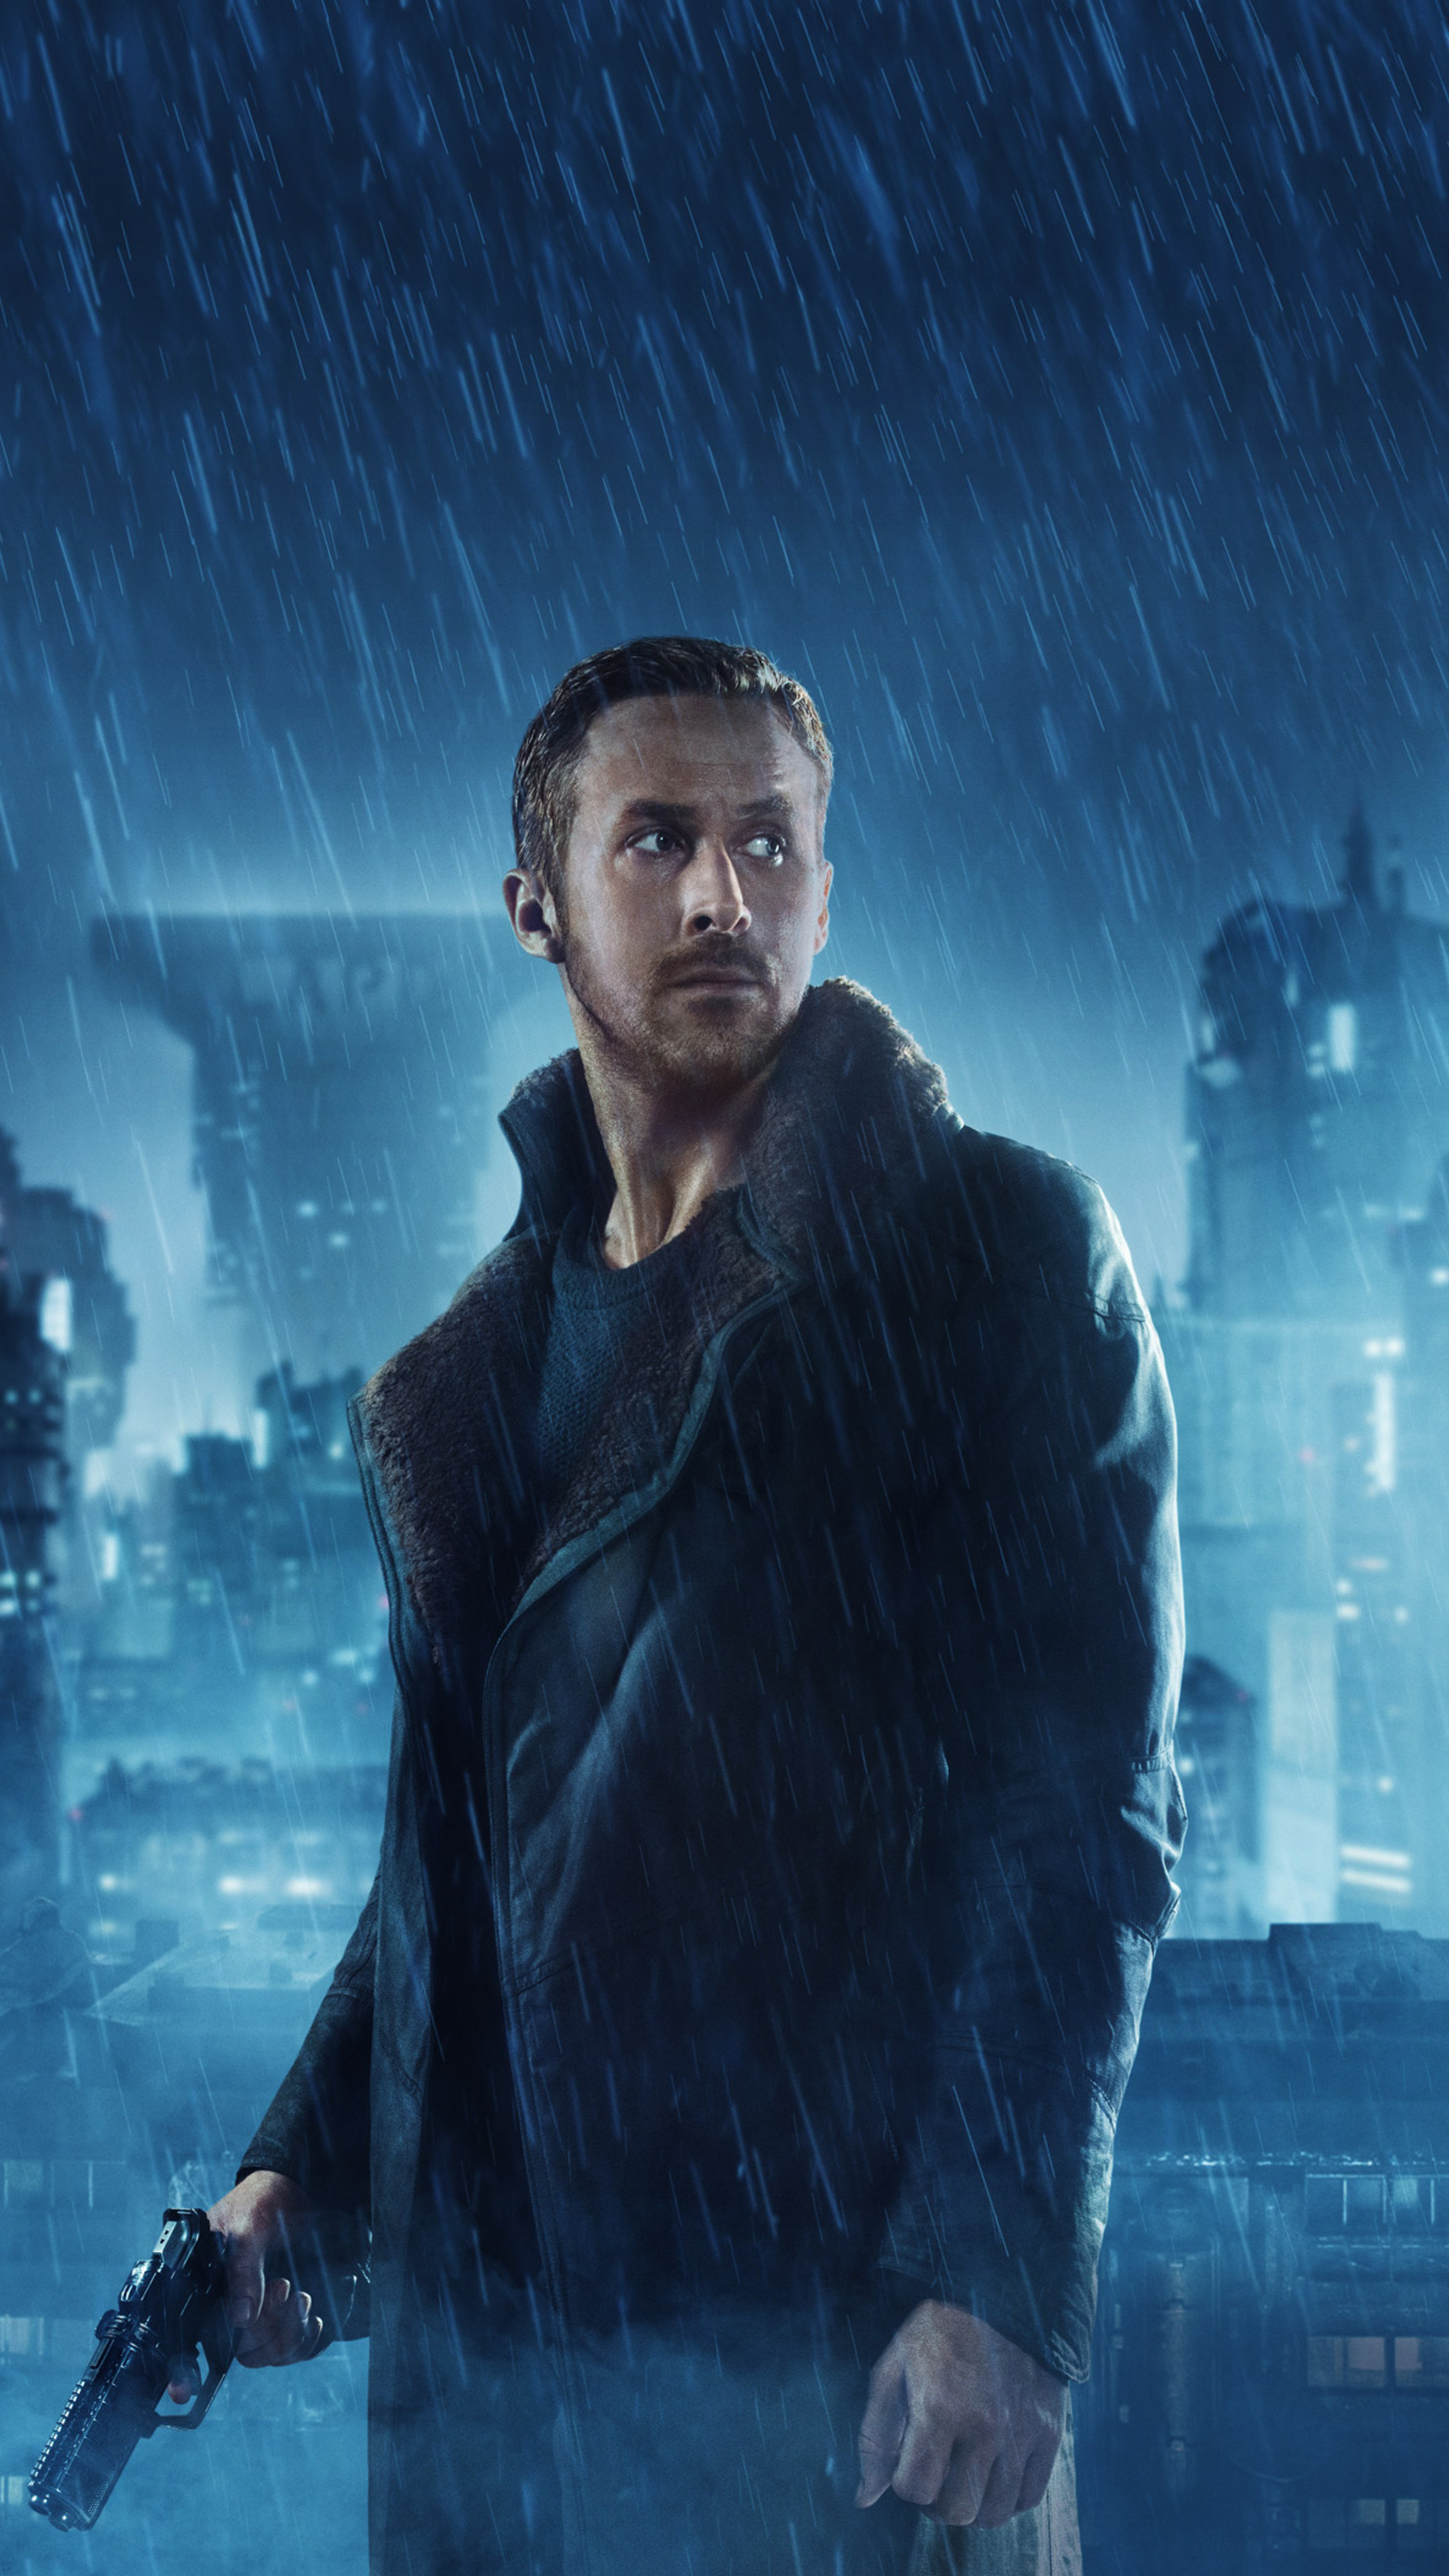 Ryan Gosling: Went on to portray Officer K in Blade Runner 2049 (2017). 2160x3840 4K Wallpaper.